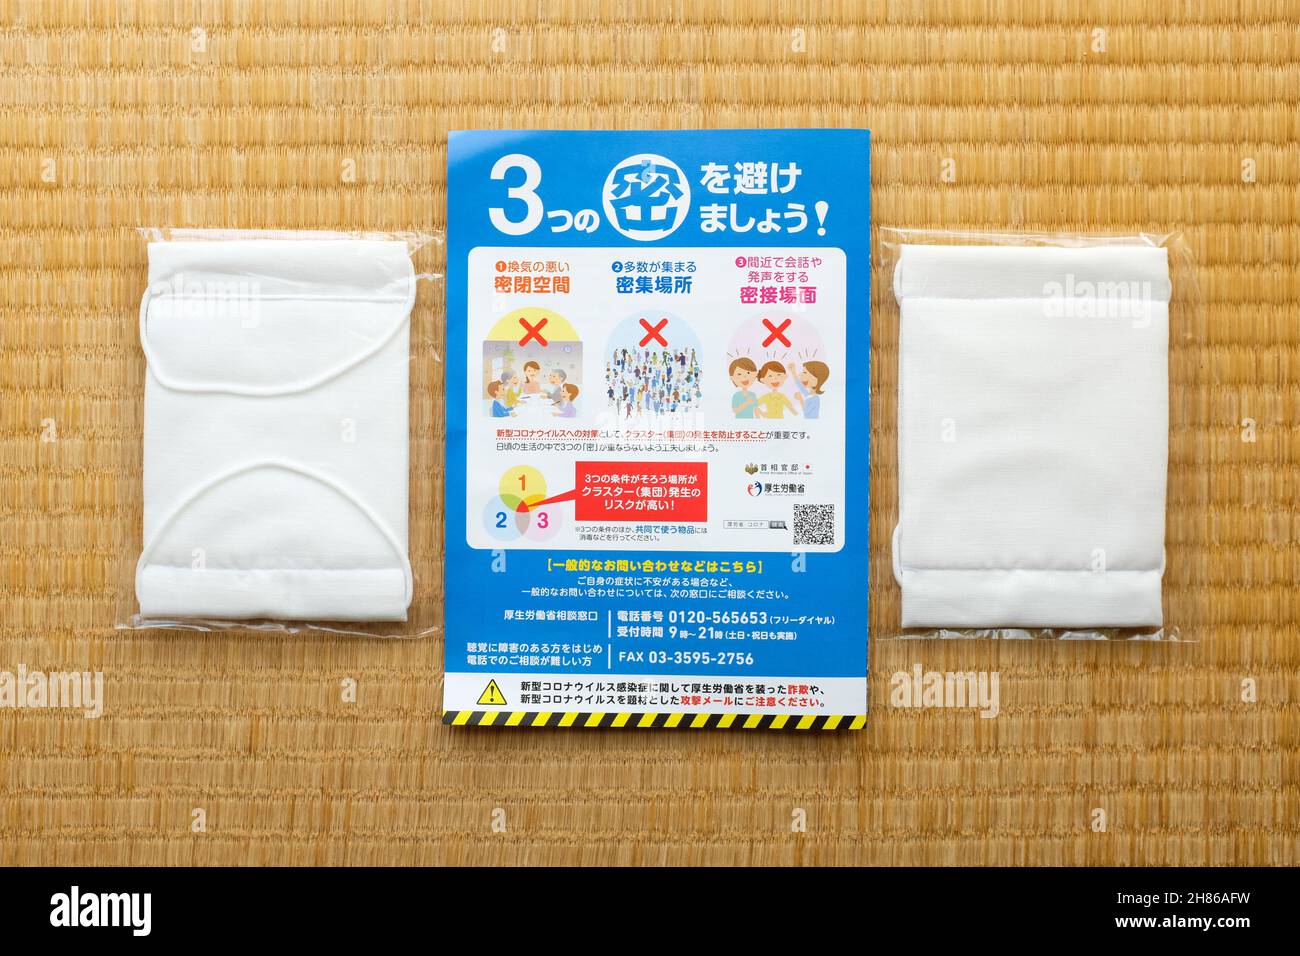 Masken („Abenomask“) und das begleitende Flugblatt, das die japanische Regierung während der COVID-19-Pandemie an 50 Millionen Haushalte verteilt hat. Stockfoto